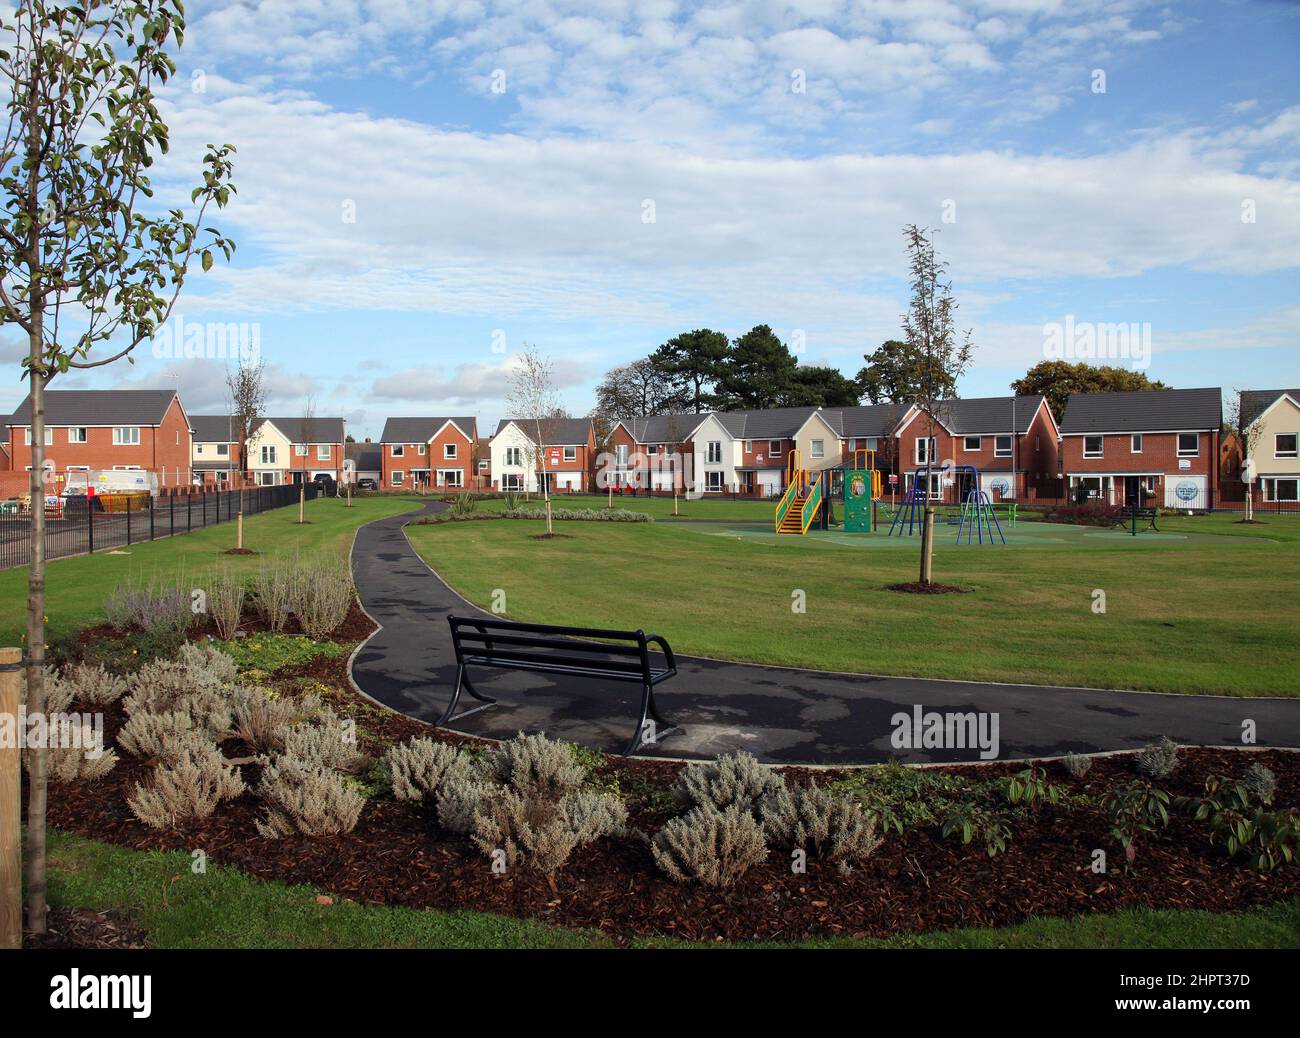 El espacio verde y el patio de juegos para niños incorporados en una moderna urbanización de desarrollo de viviendas en Wolverhampton, West Midlands, Reino Unido Foto de stock